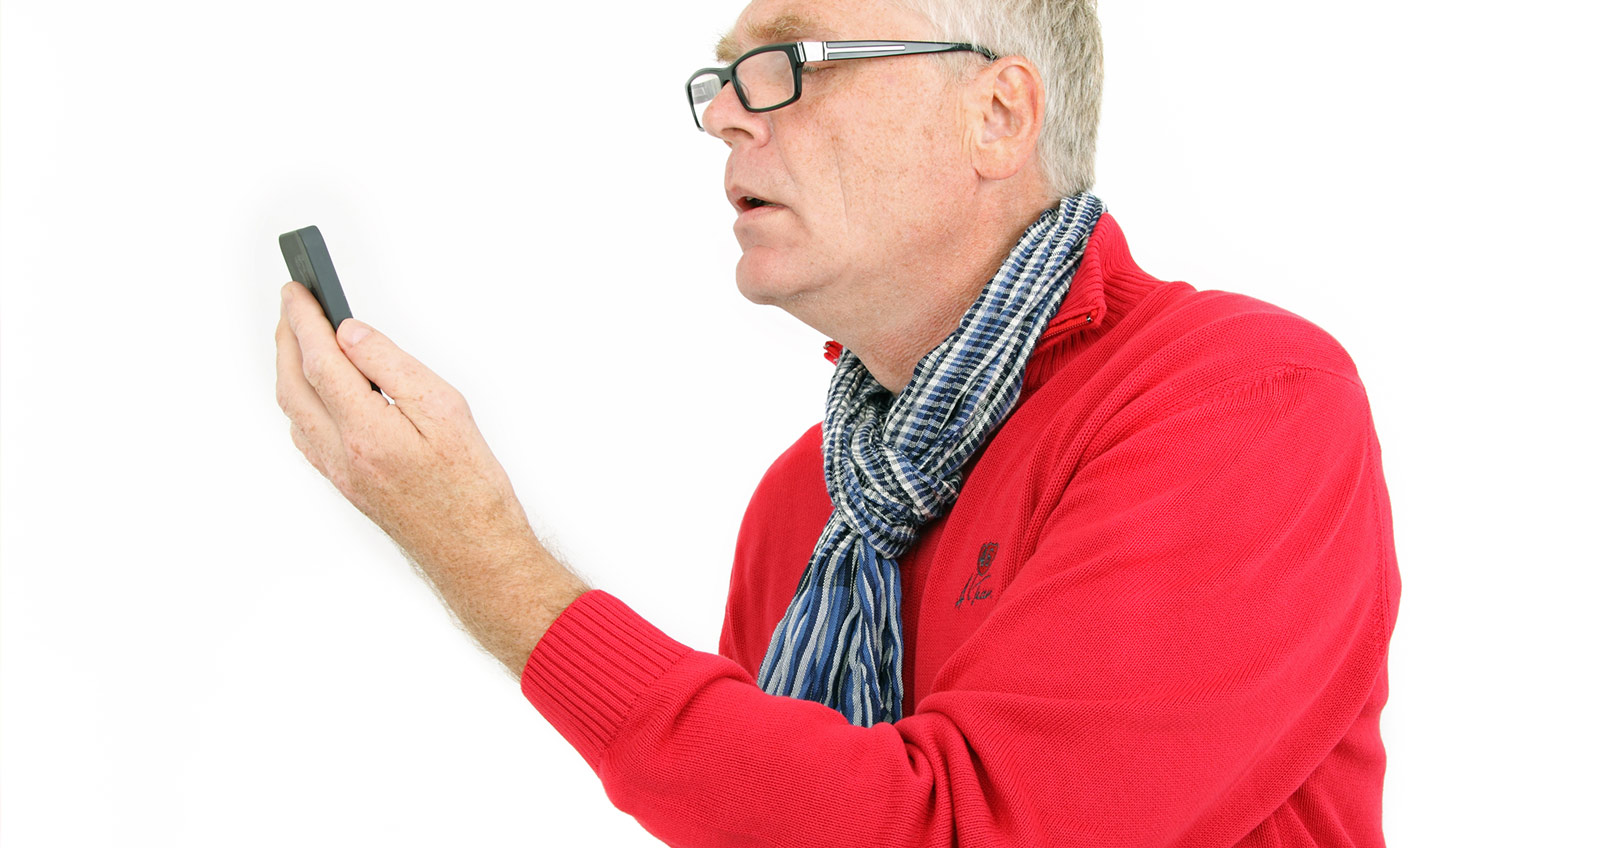 Ein älterer Herr schaut verzweifelt über seine Brille auf ein Smartphone oder ähnliches Gerät und versucht etwas zu entziffern